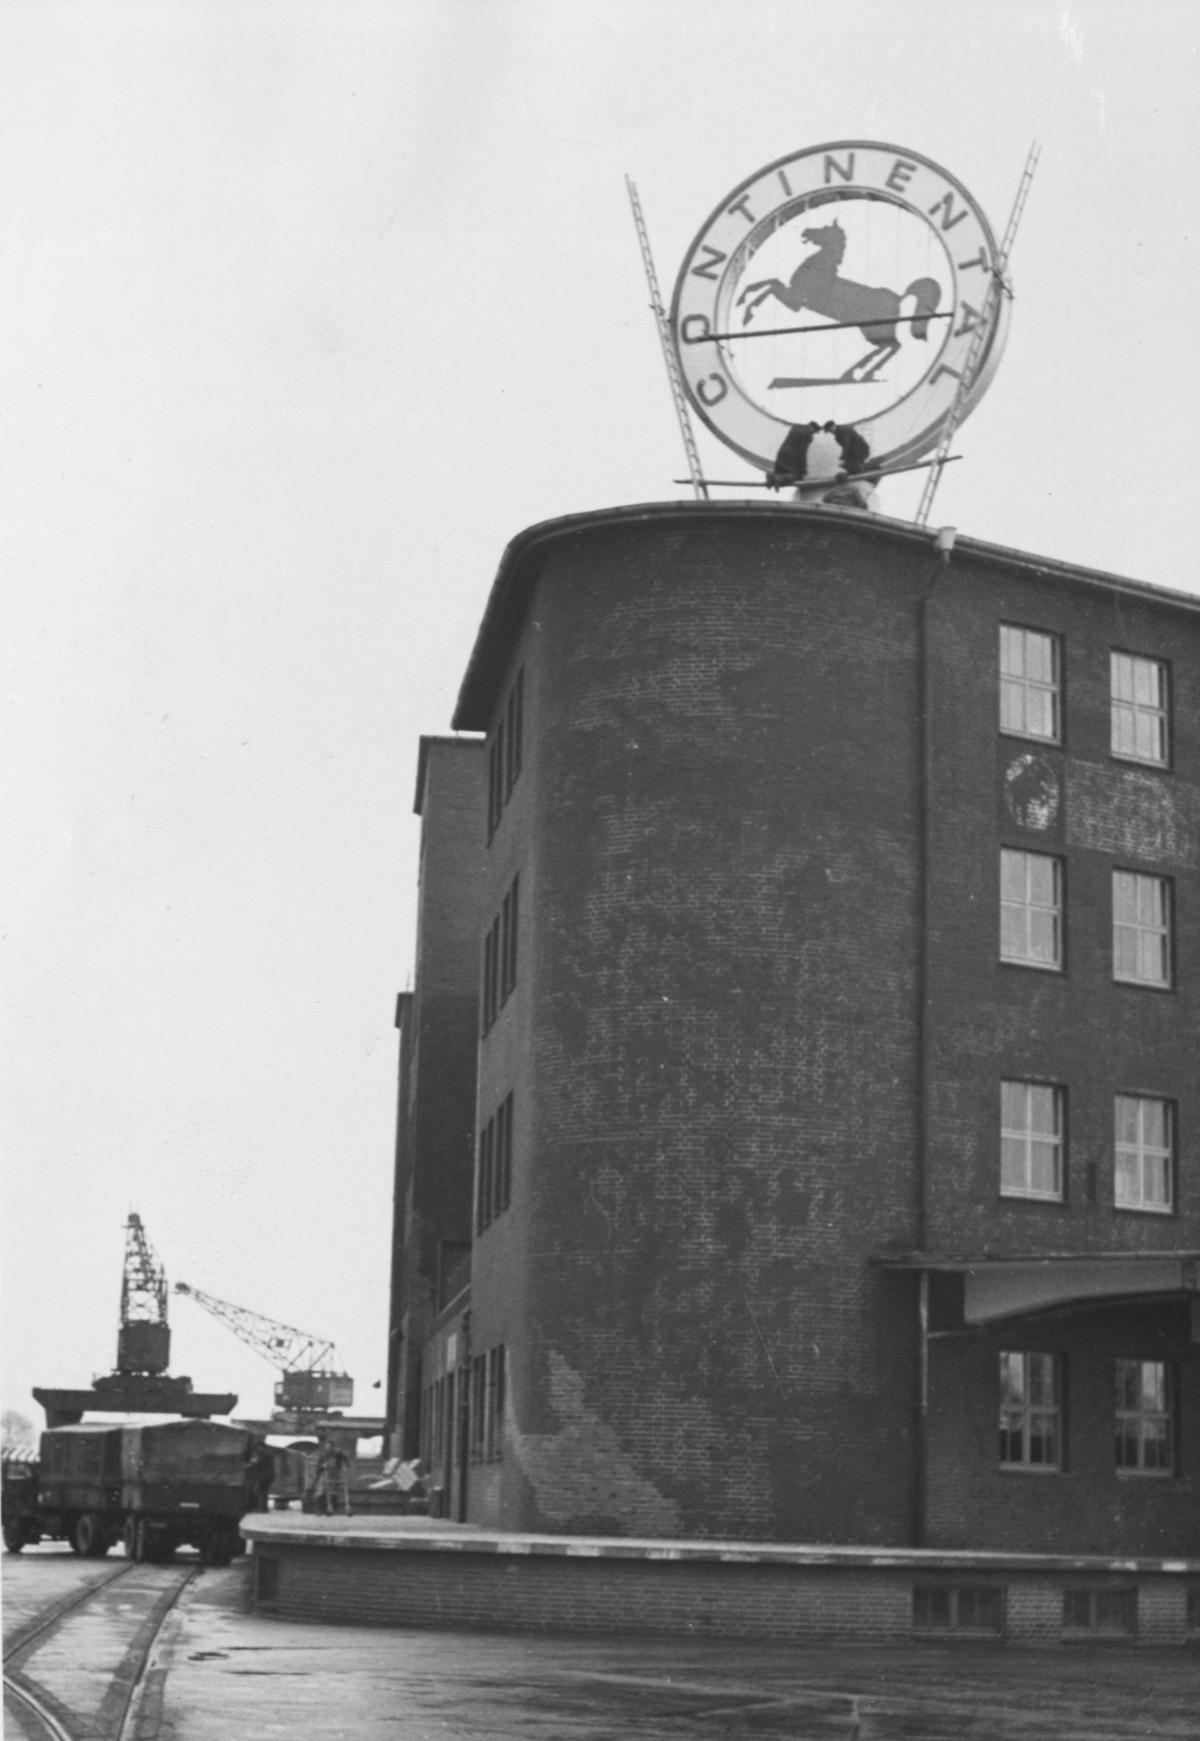 Das Conti-Logo als Leuchtreklame wurde erstmals 1949 auf dem Werkgebäude in Hannover-Stöcken platziert. | Foto: Continental AG